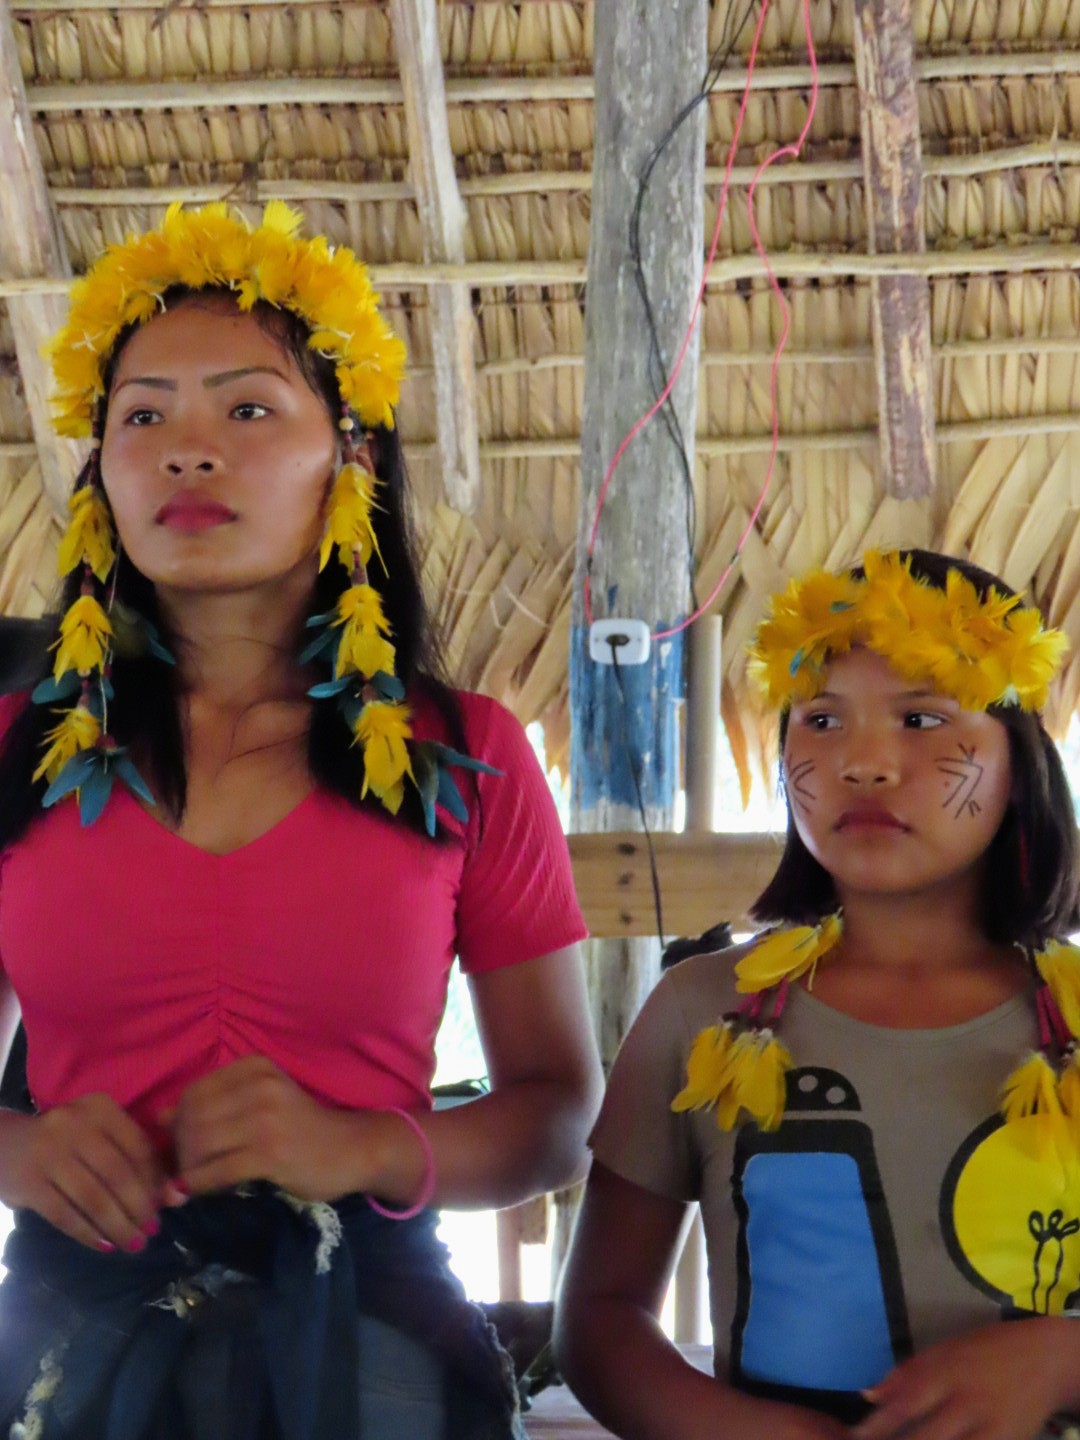 III Encontro do ISA com os Wai Wai em Roraima, realizado de 04 a 07 de abril, na comunidade Soma, Terra Indígena Trombetas Mapuera, em Caroebe|Evilene Paixão/ISA 